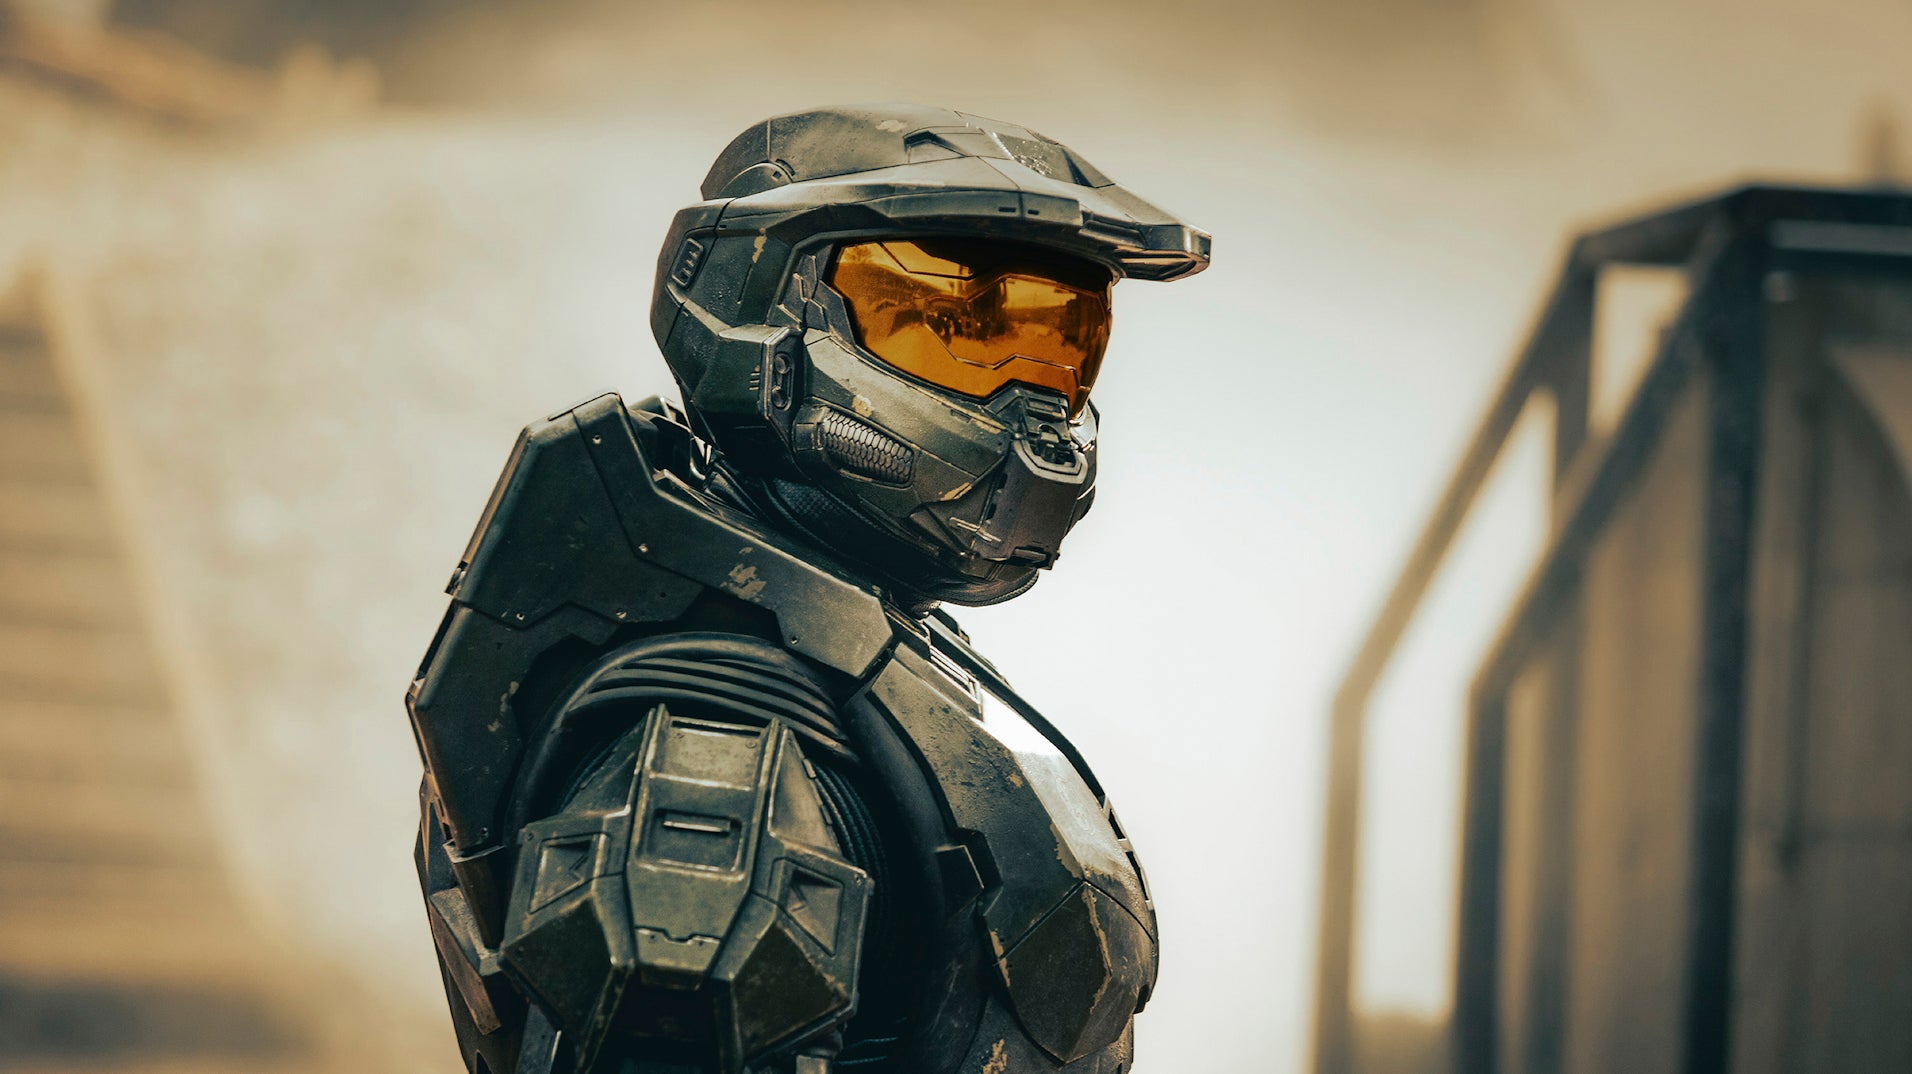 Immagine di Halo, la serie TV mostra Master Chief senza casco? Parla 343 Industries